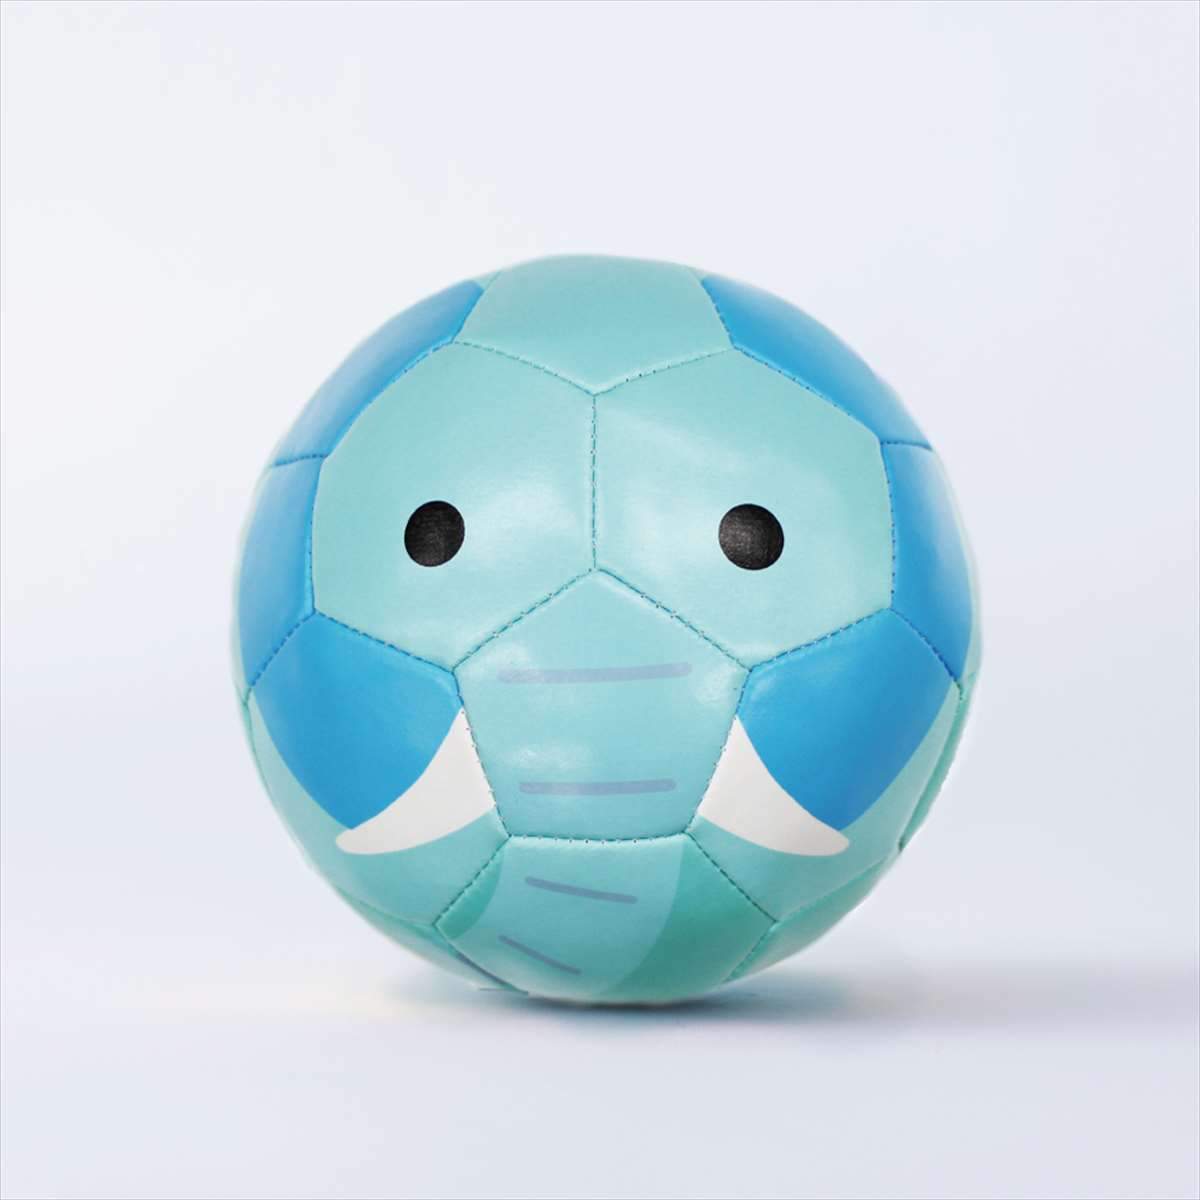 ベビー用ボール Football Zoo Baby ゾウ Bsf Zoob Sfida Online Store